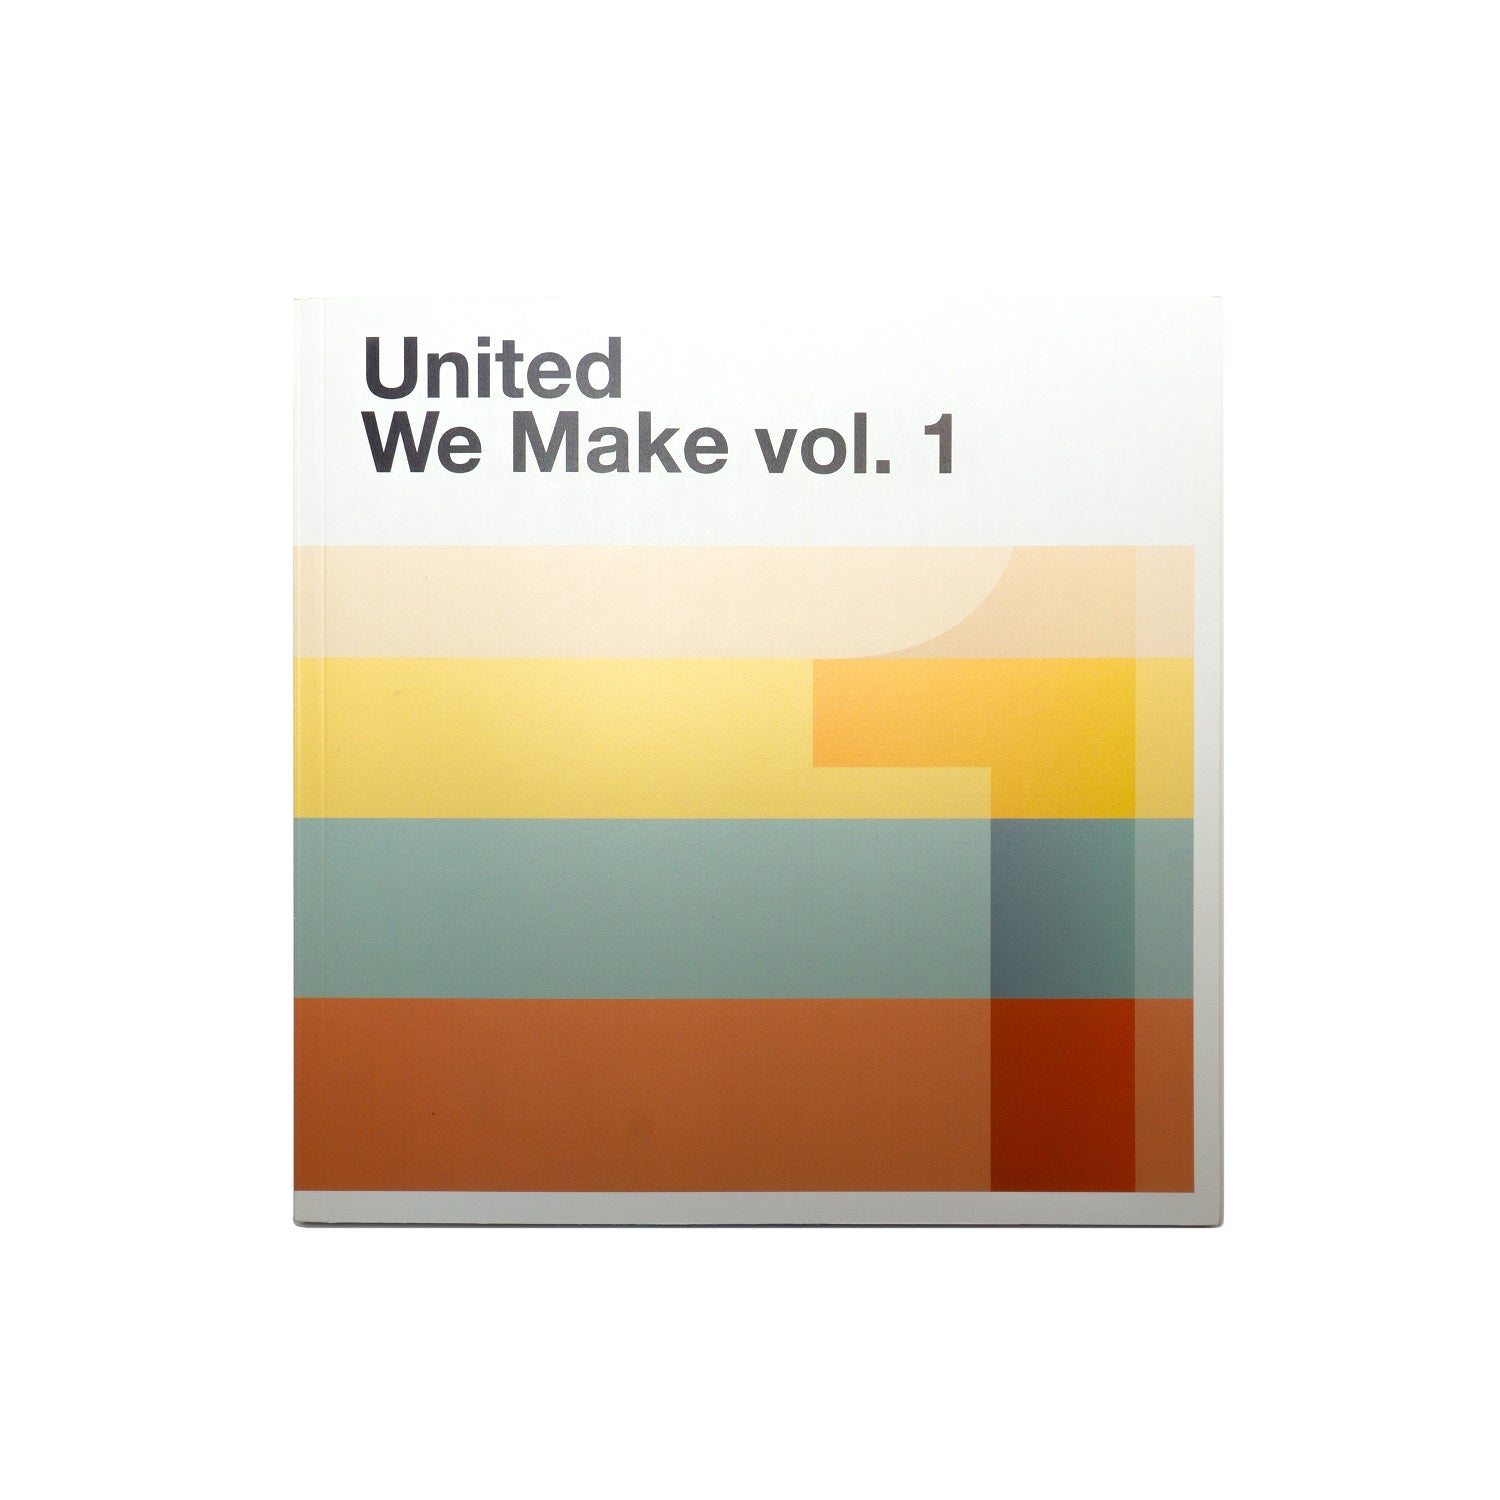 United We Make vol. 1